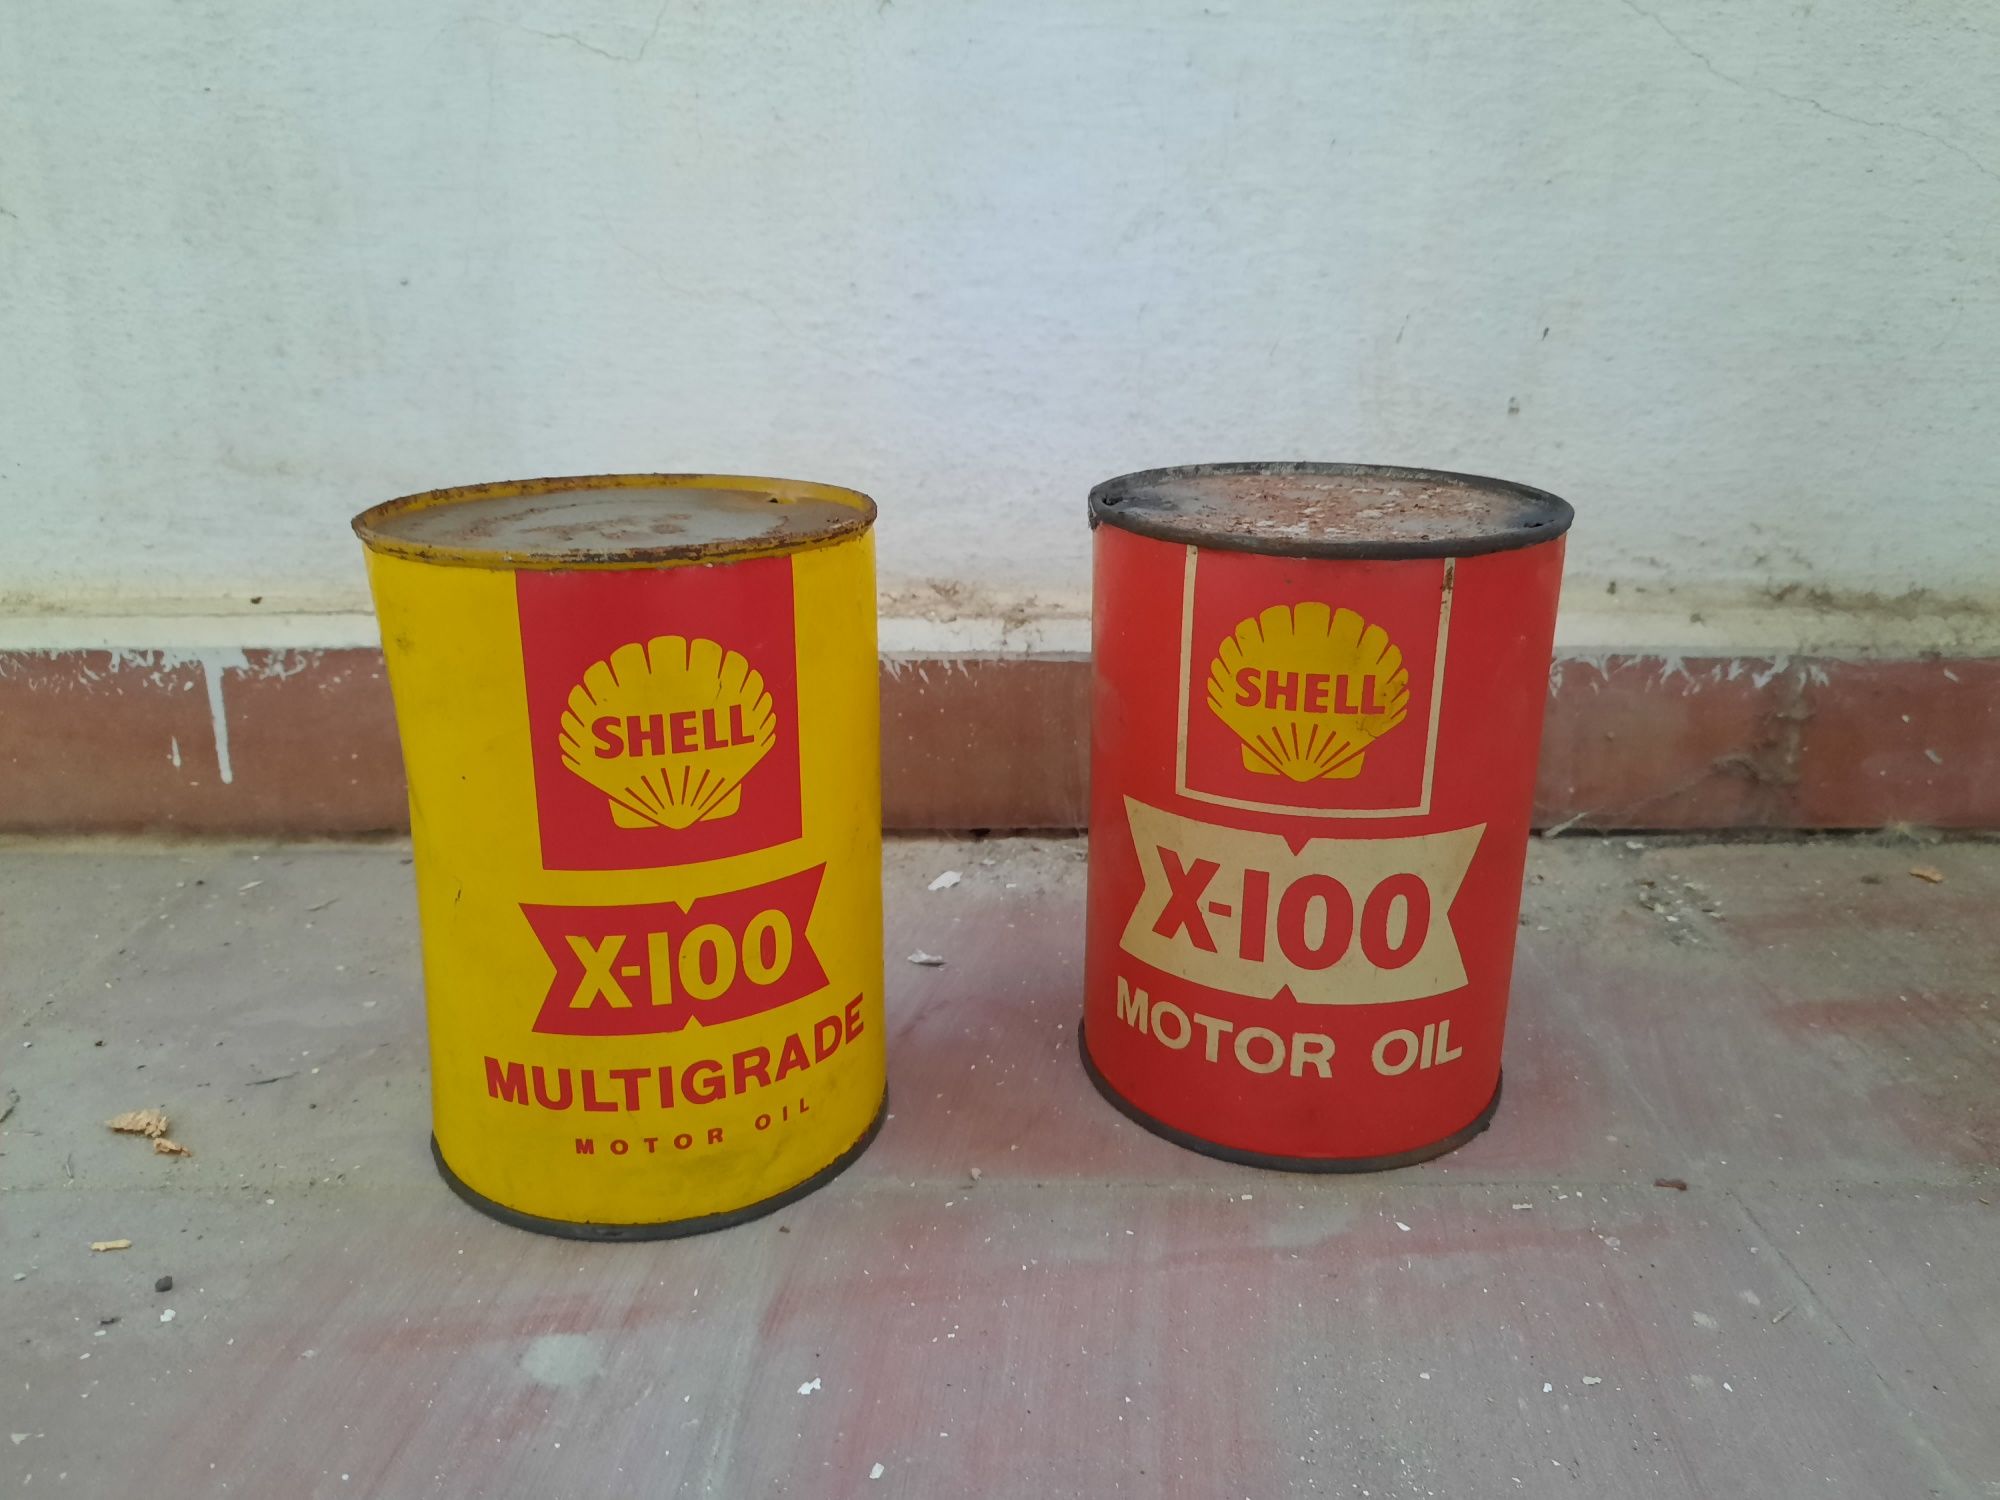 Latas de Oleo Shell antigas. Década de 70.